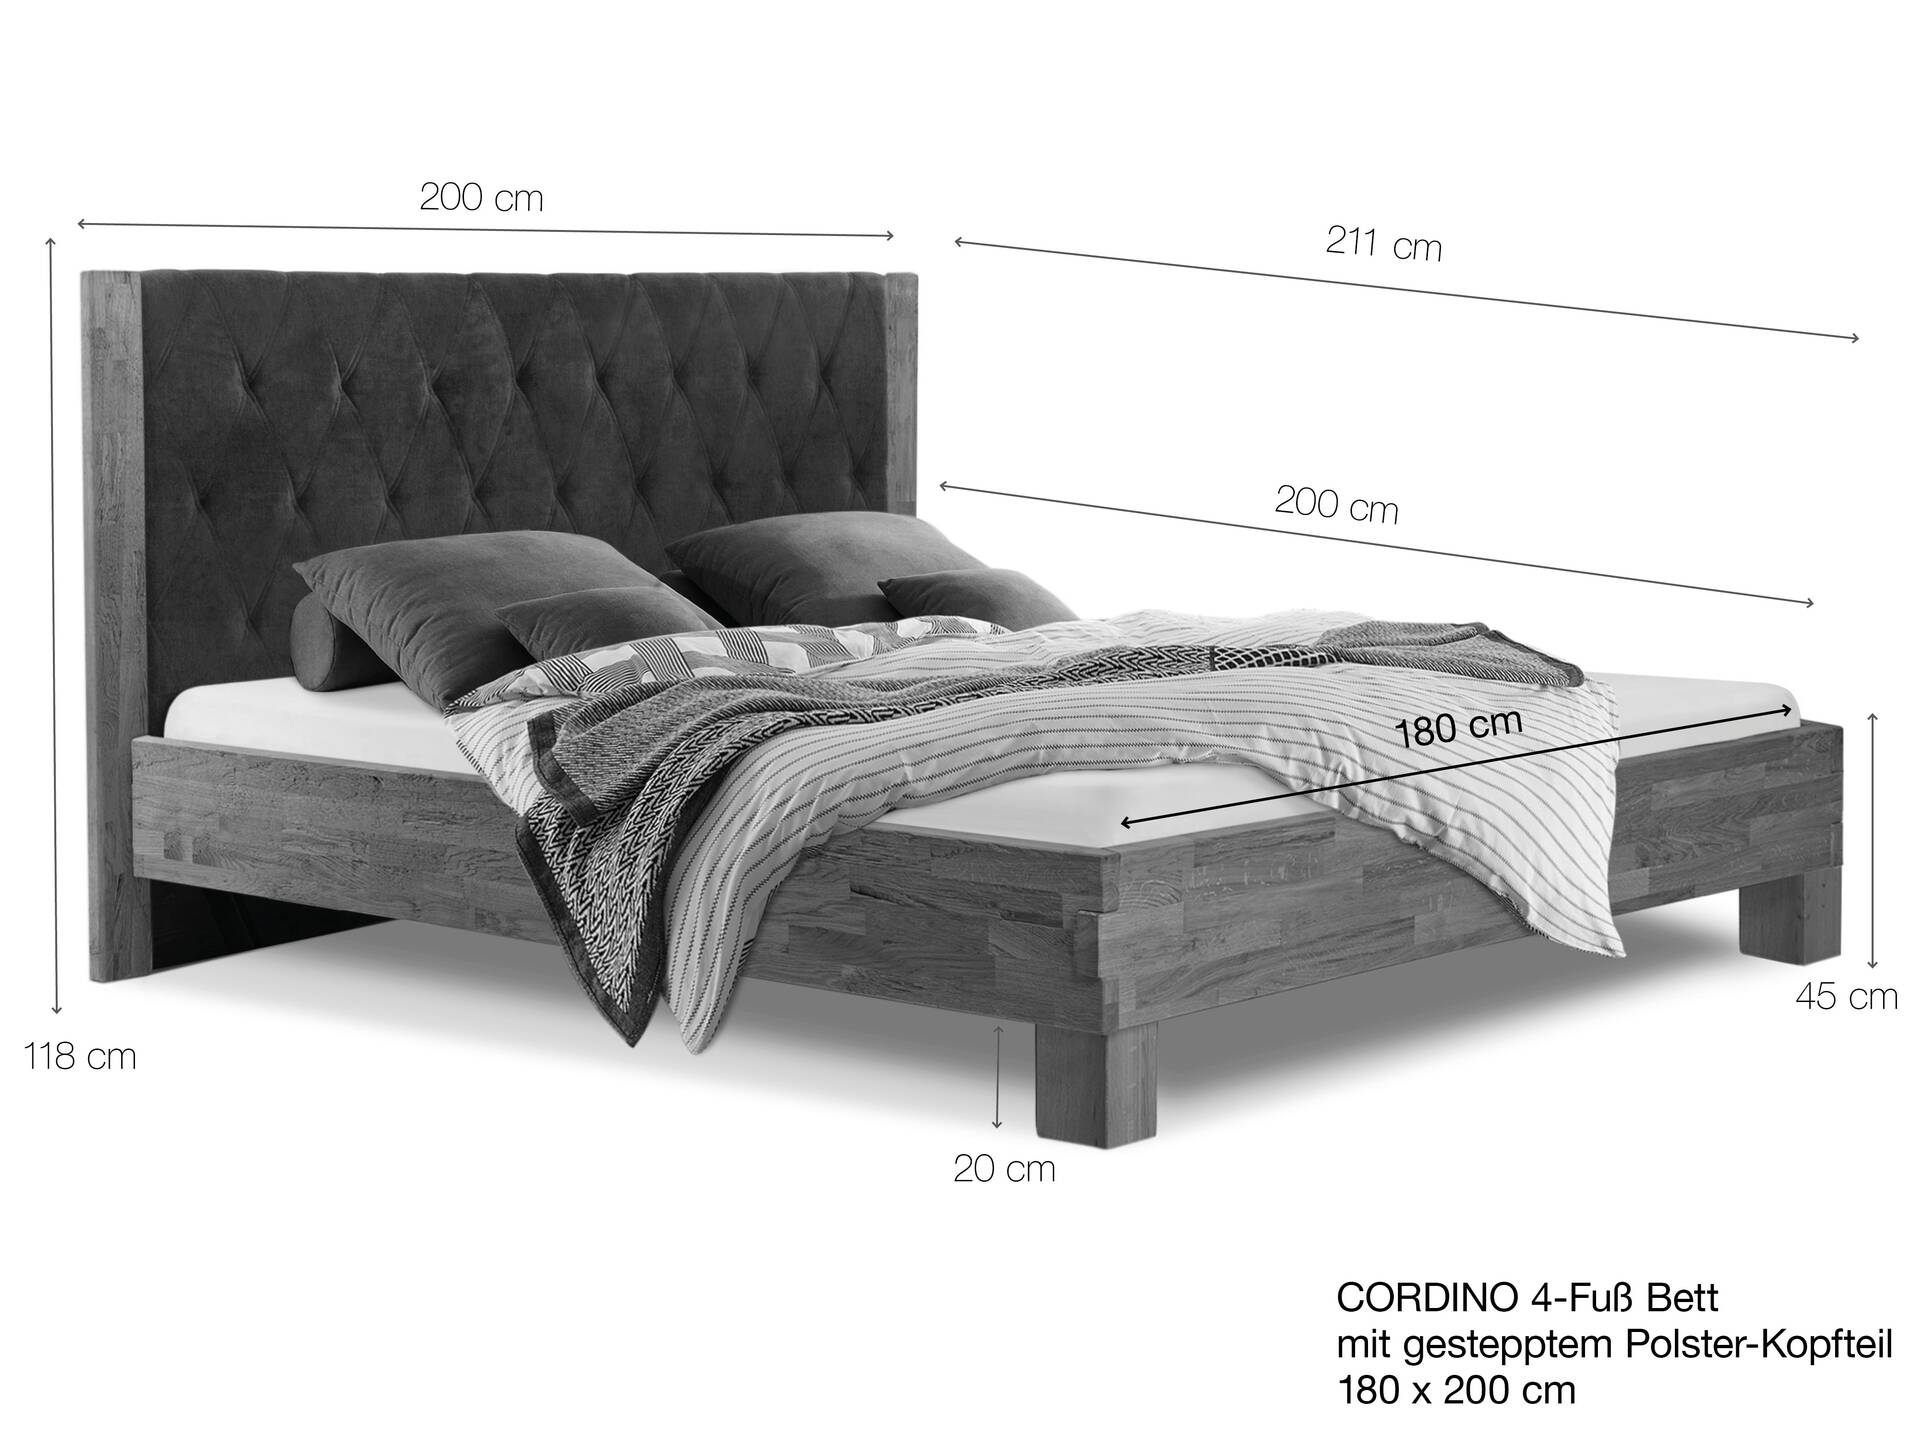 CORDINO 4-Fuß-Bett aus Eiche mit gestepptem Polster-Kopfteil, Material Massivholz 180 x 200 cm | Eiche lackiert | Stoff Anthrazit | gebürstet